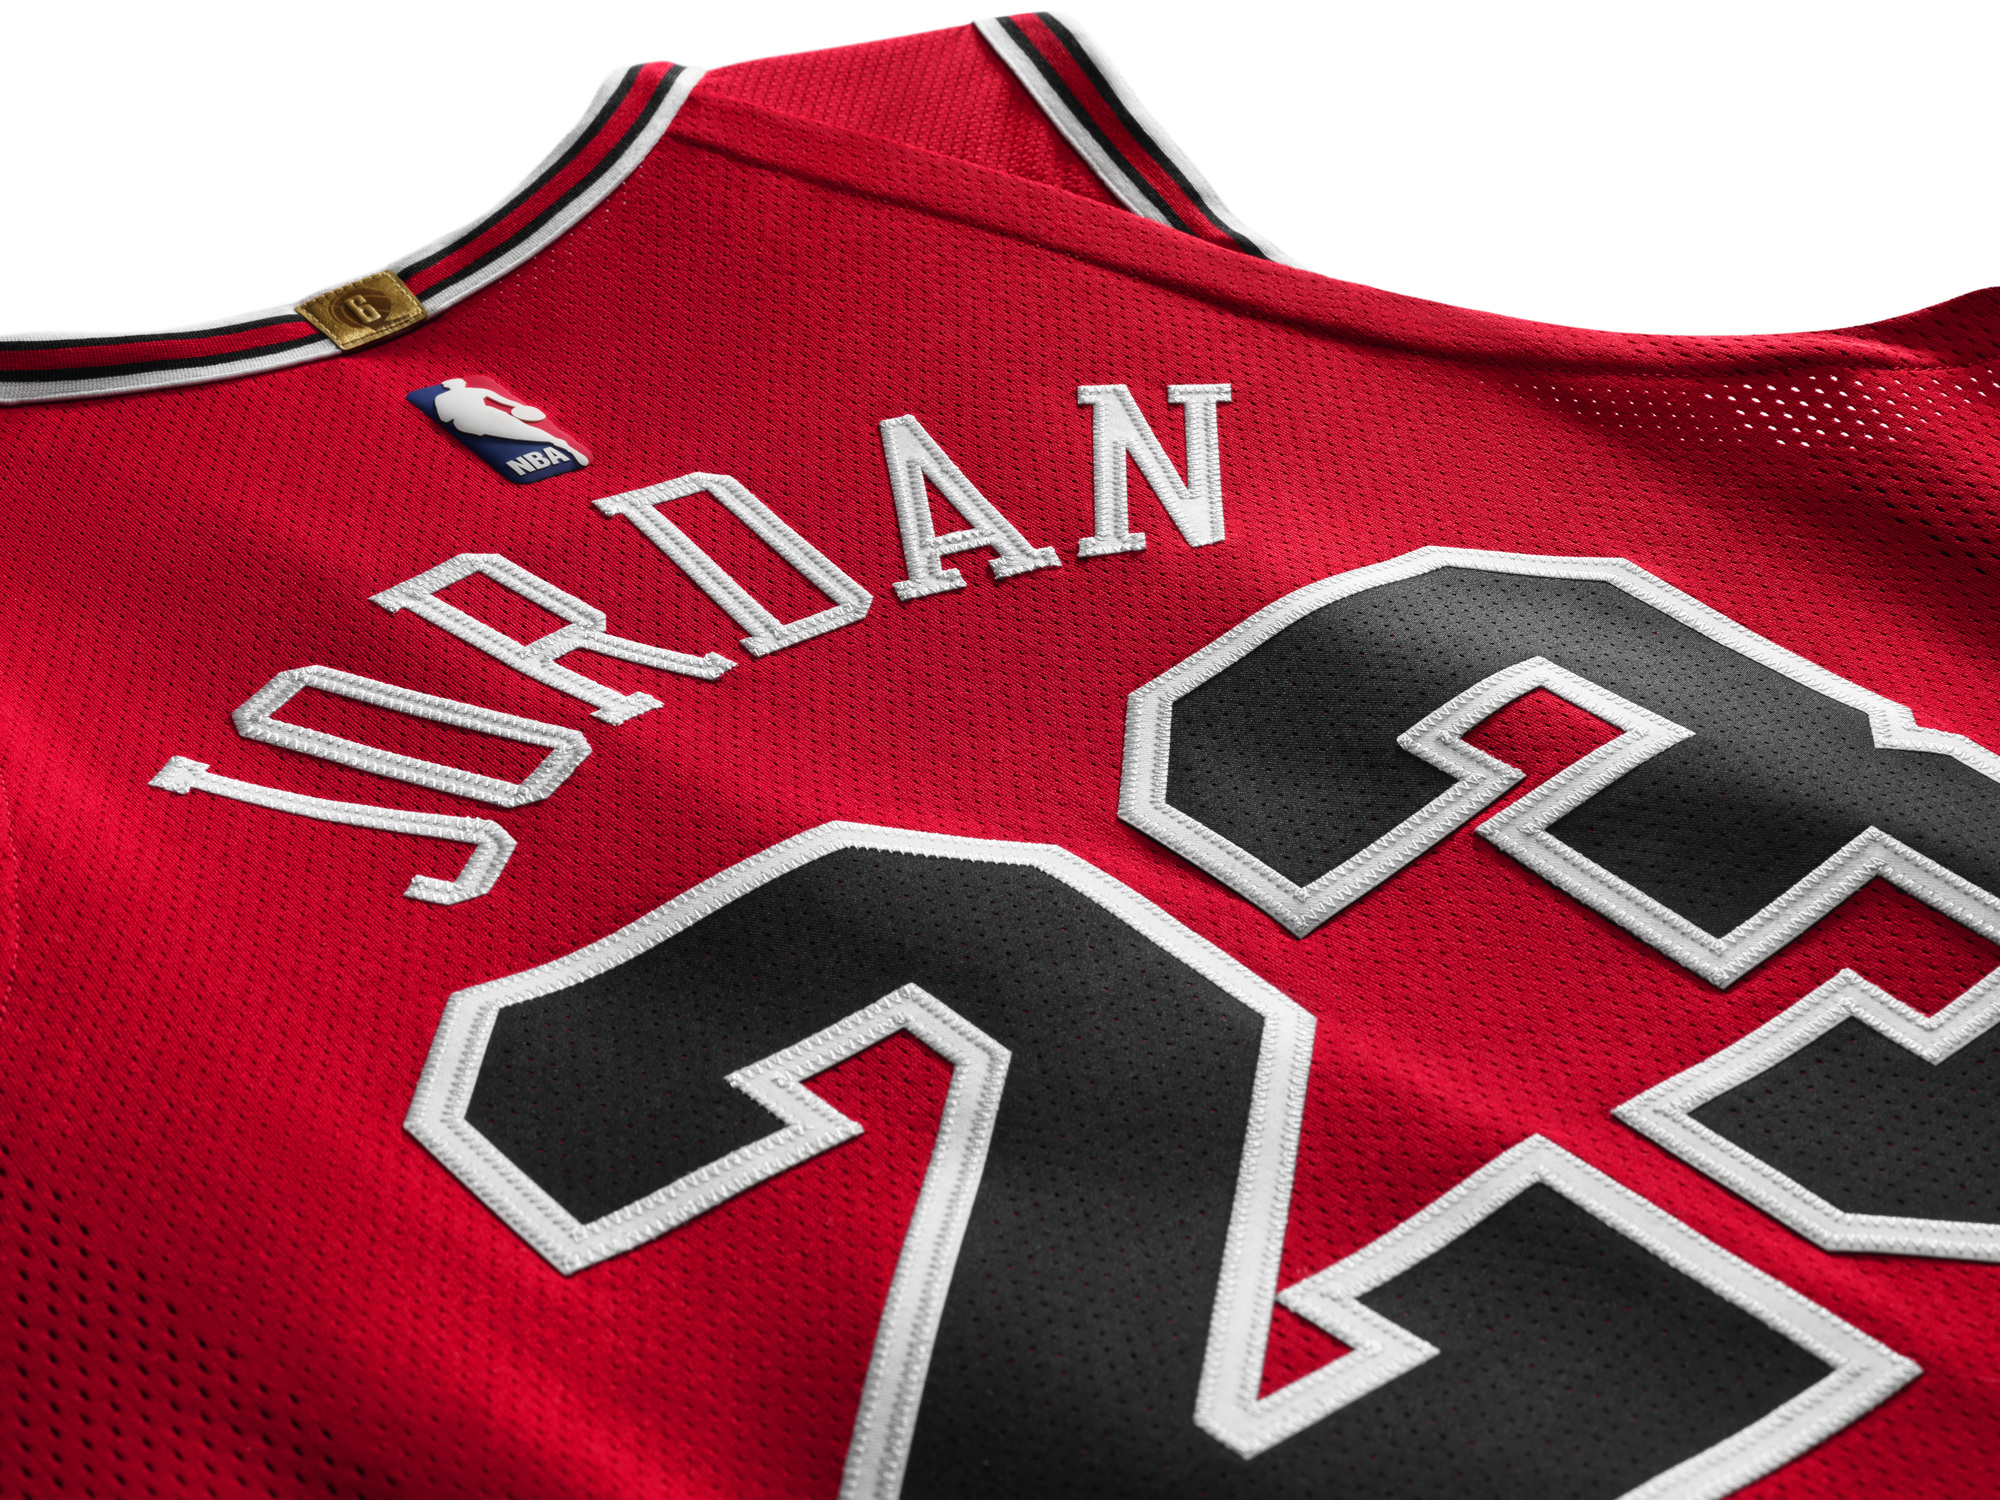 Michael Jordan authentic jersey last shot 2